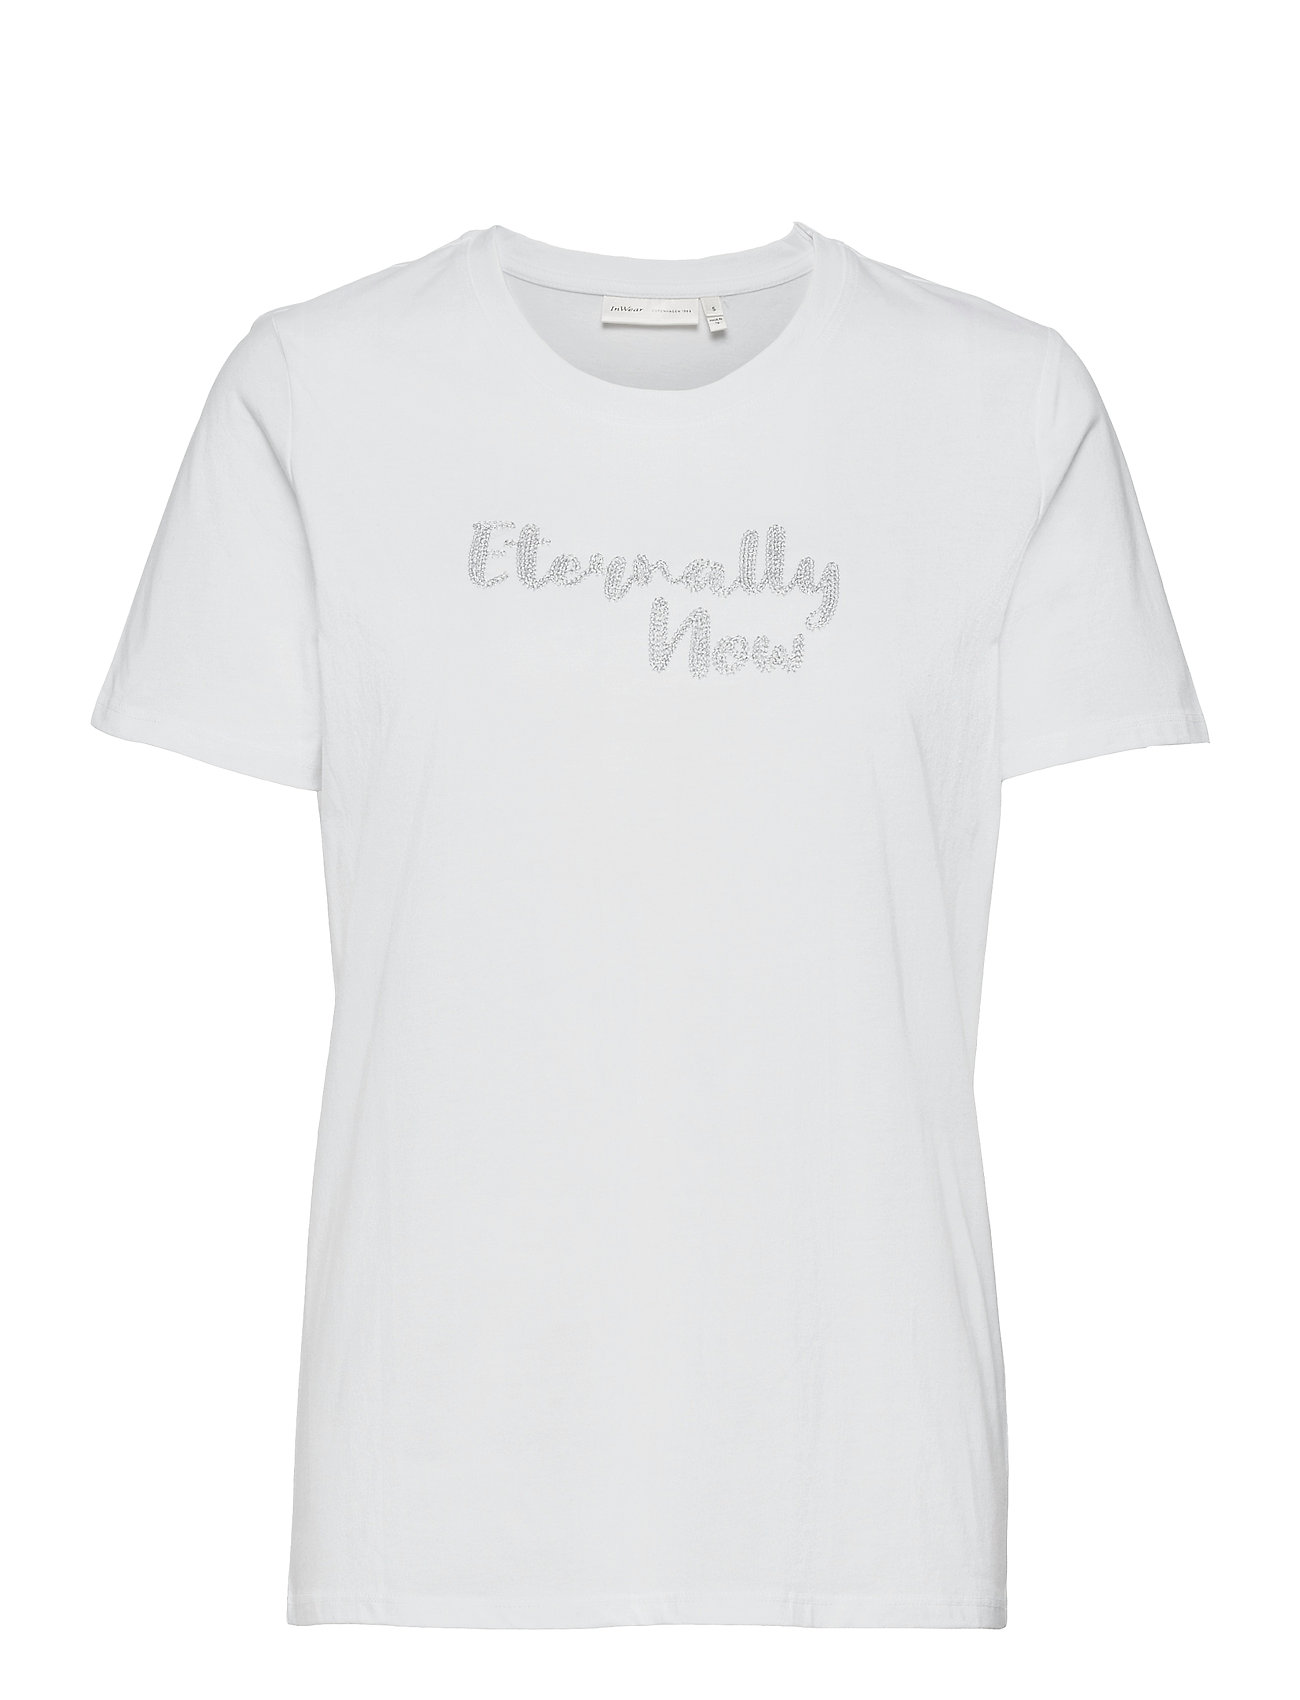 Vidariw T-Shirt T-shirts & Tops Short-sleeved Valkoinen InWear